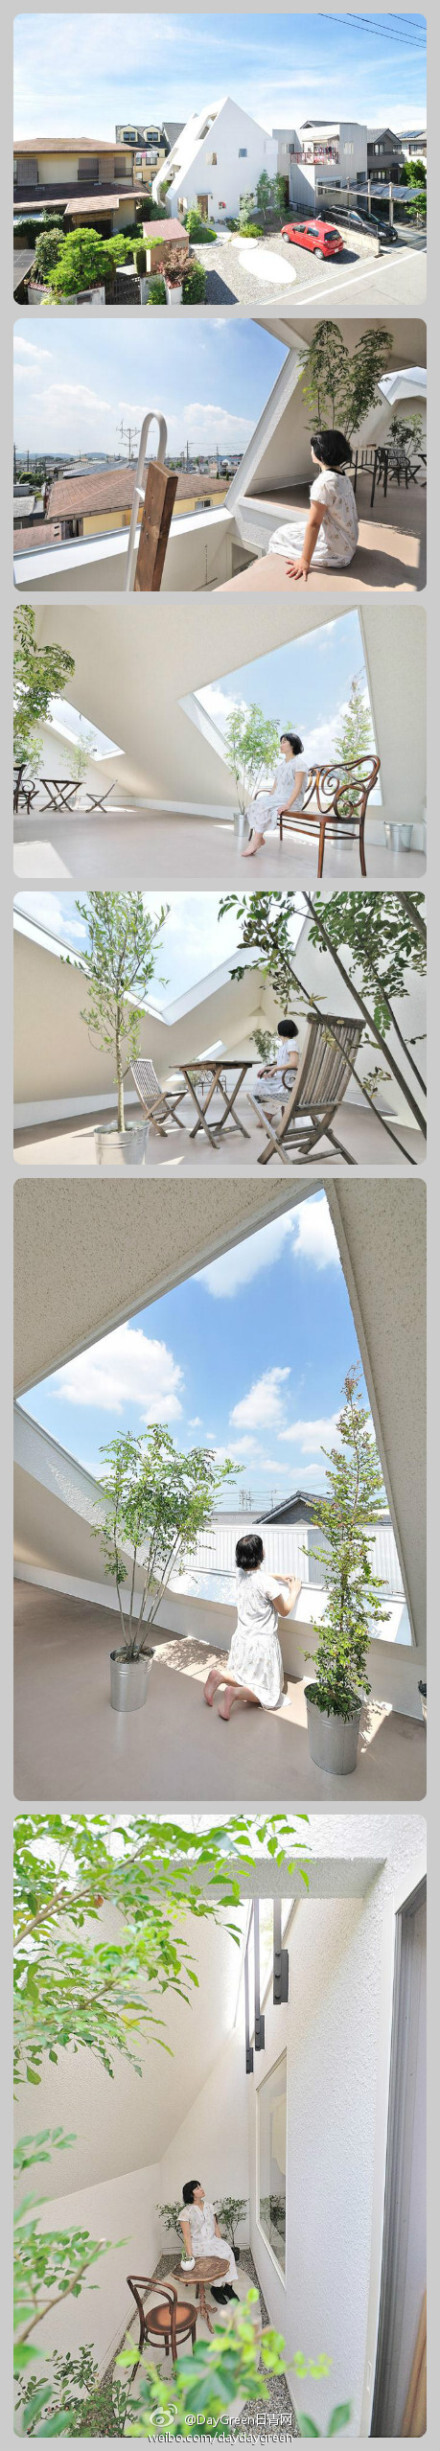 【设计】位于日本的一处住宅设计，建筑共3层，可以看见远山，但住宅与周围房屋的近距离使得打开窗户就没了隐私。建筑师考虑如何在这样一个紧迫的空间中创造出开放感。最后设计了一个贯通三层楼的大斜屋顶，斜屋顶的大开口带来自然光和空气，还有满目茂密绿意的风景。